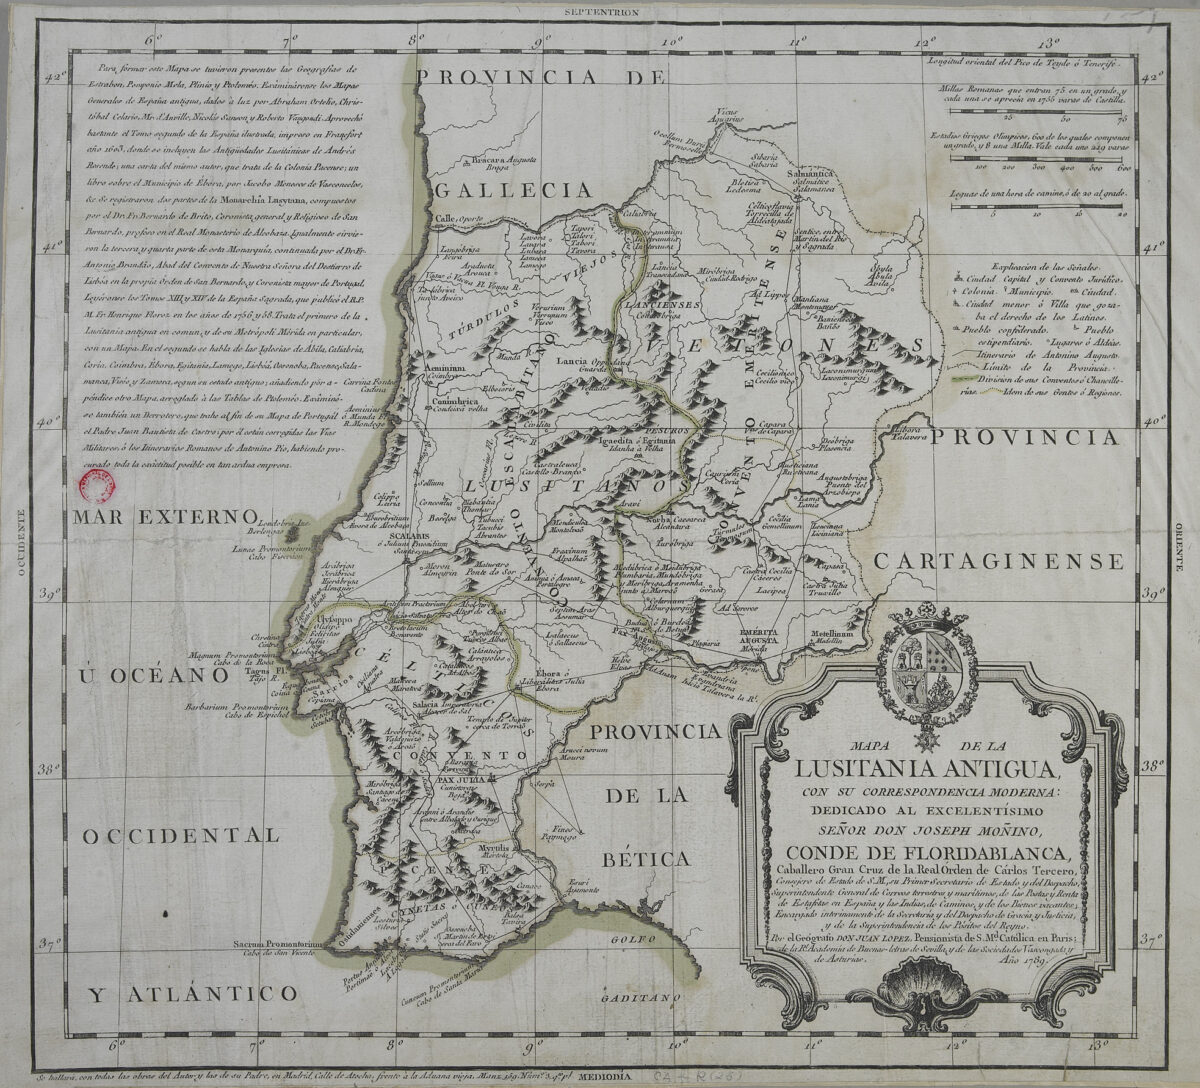 Mapa Geológico de Espanha e Portugal à escala 1:1 000 000